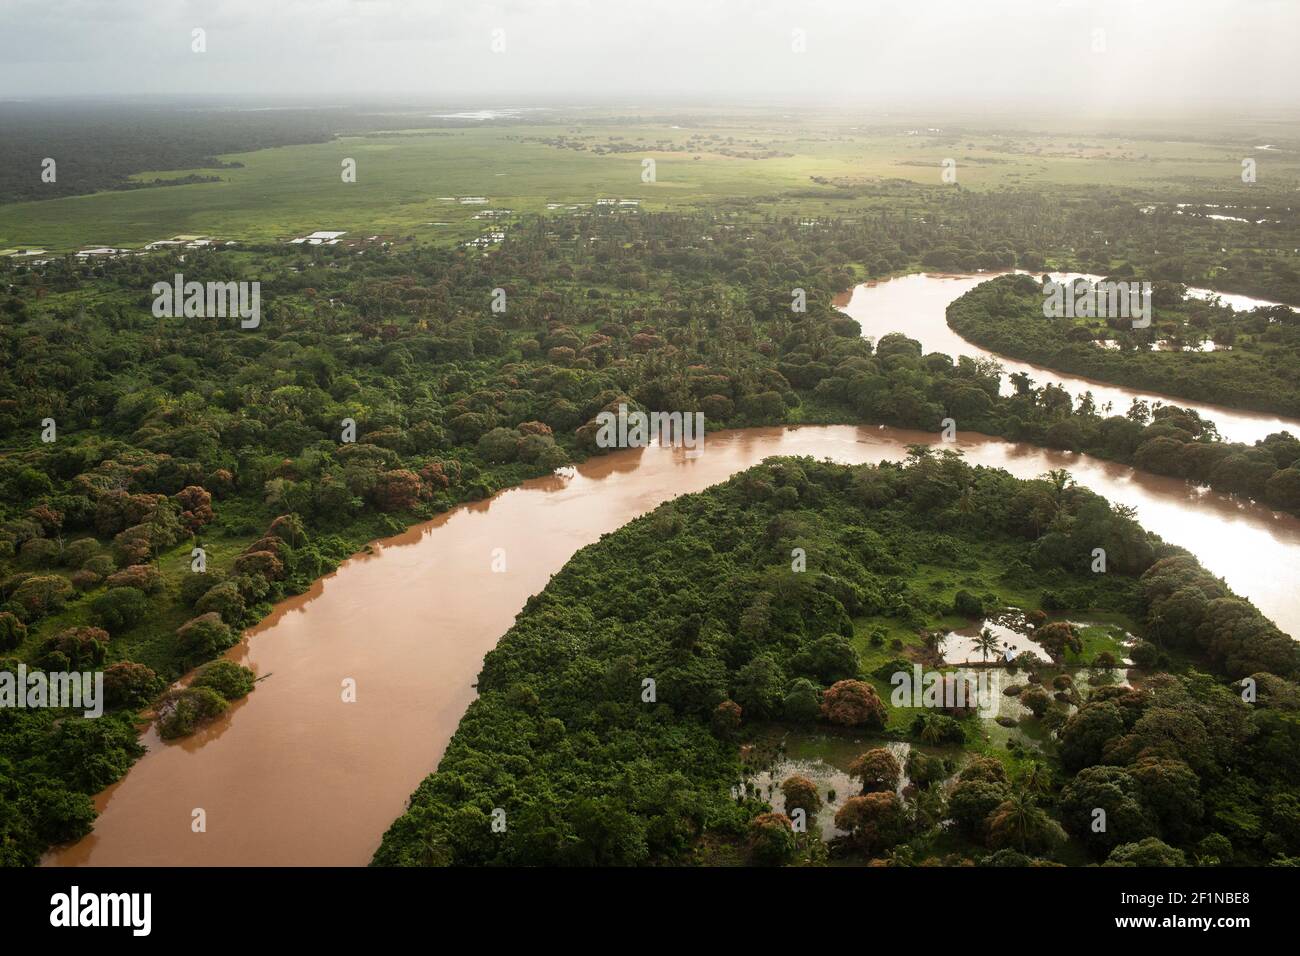 Tana River Delta in Kenya Stock Photo